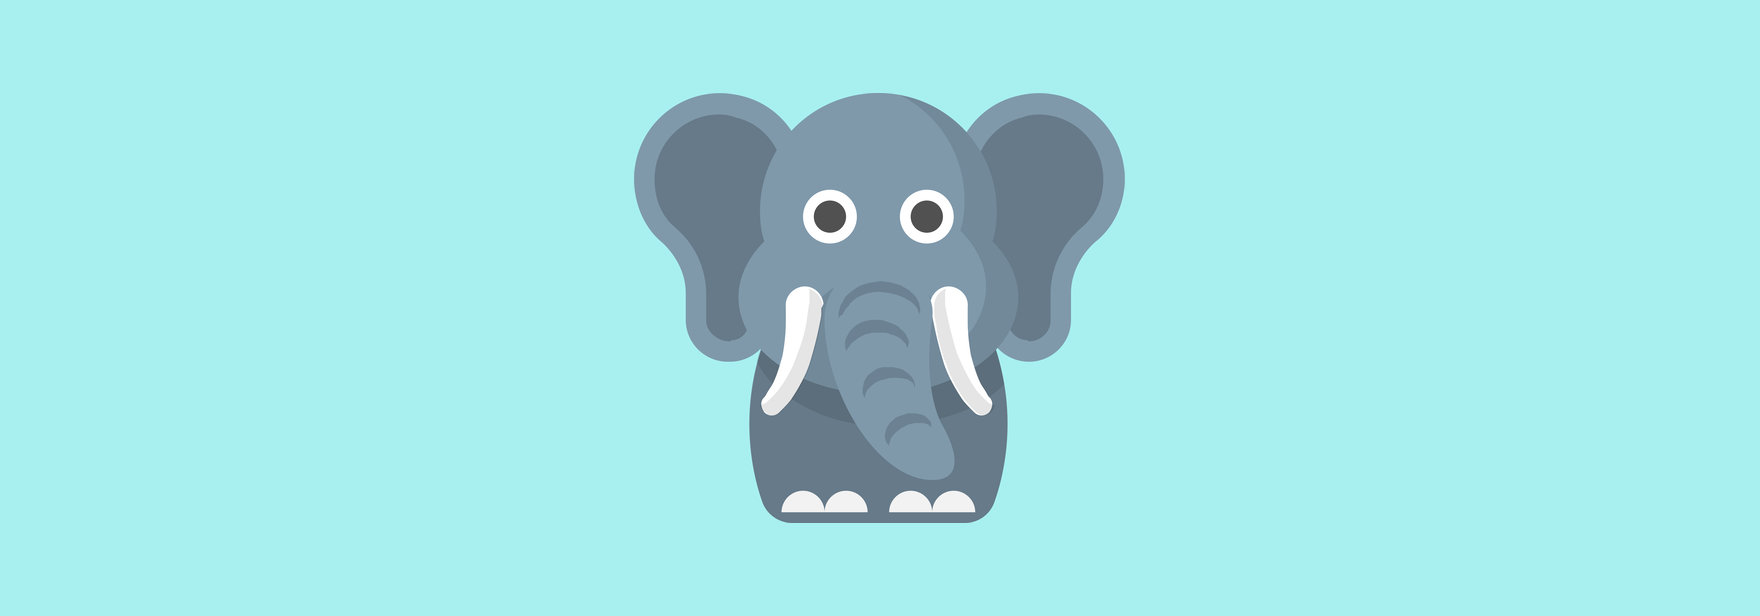 Игра на языке go. POSTGRESQL испуганный слон.